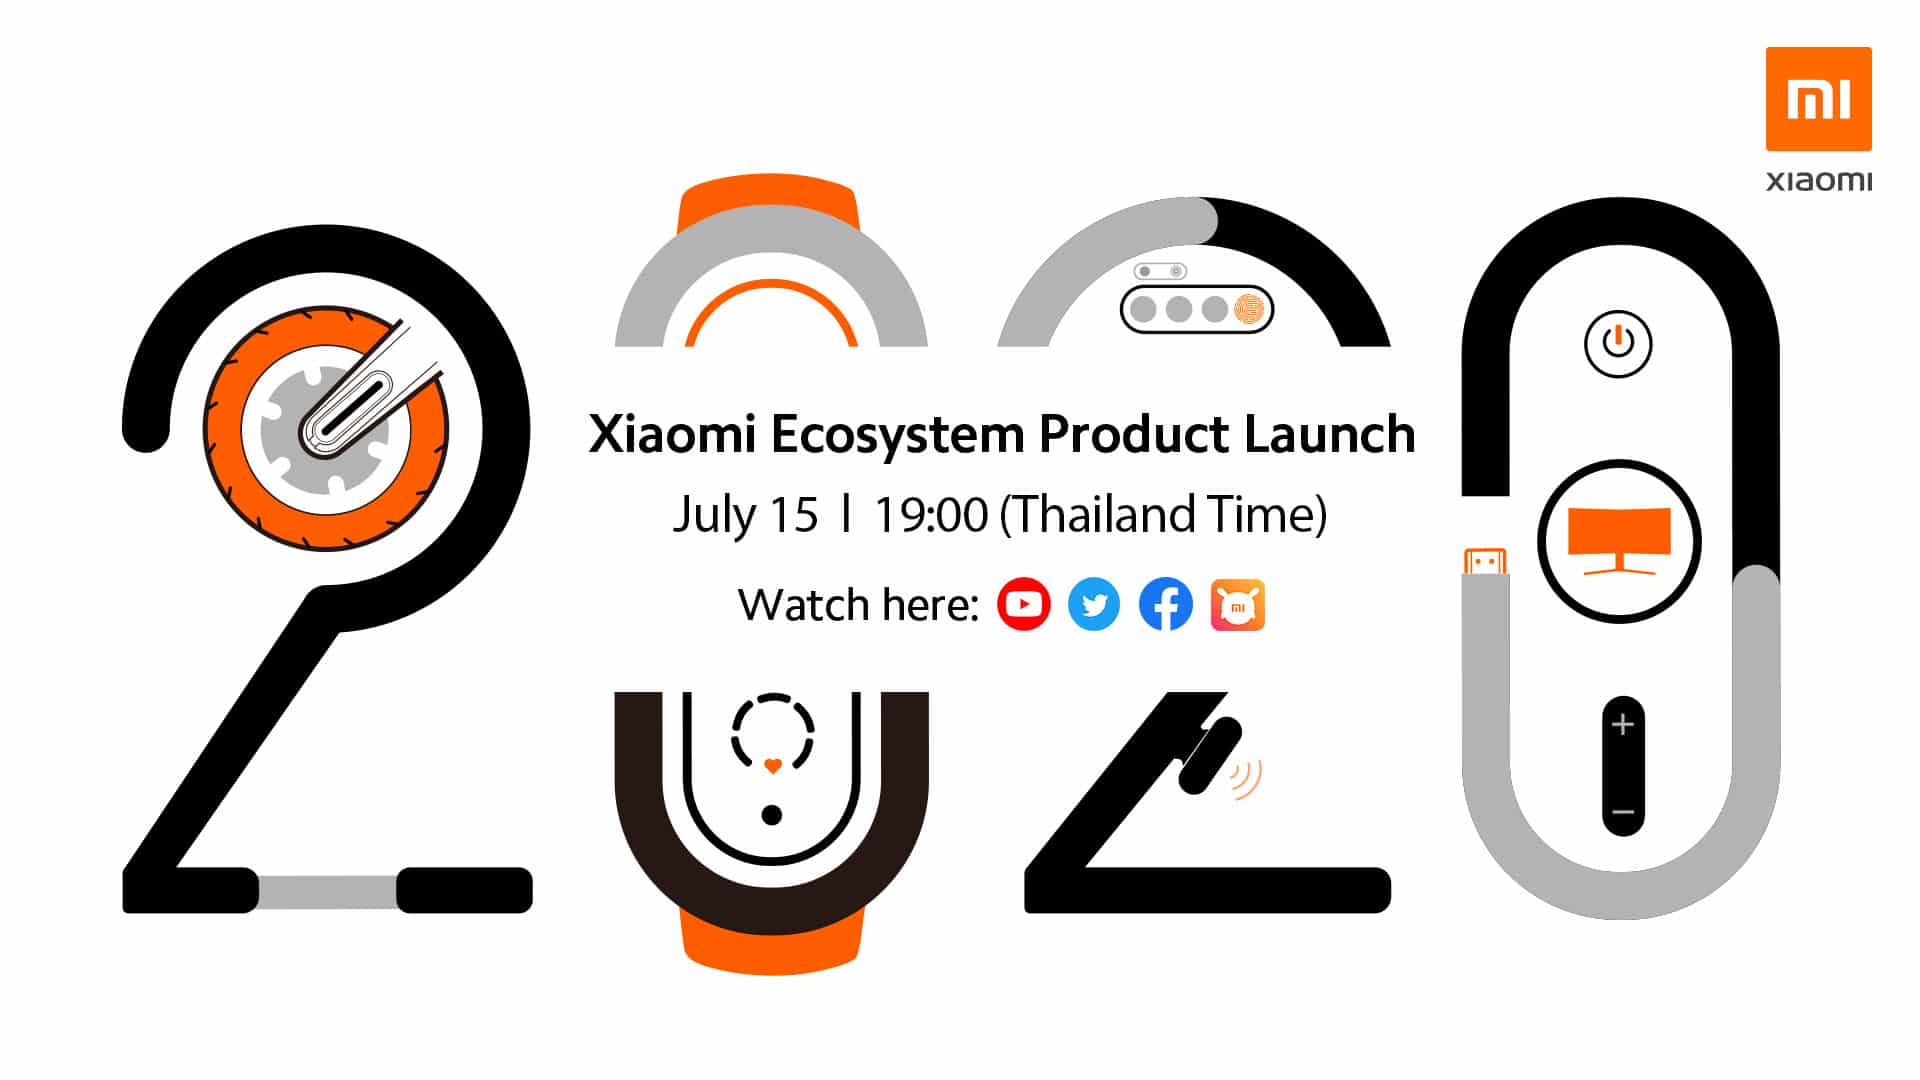 เตรียมพบกับ การเปิดตัวสุดยอดนวัตกรรมอัจฉริยะแห่งปี 2020 ในงาน “Xiaomi Ecosystem Product Launch Event” วันที่ 15 กรกฎาคมนี้ เวลา 19:00 น. 1